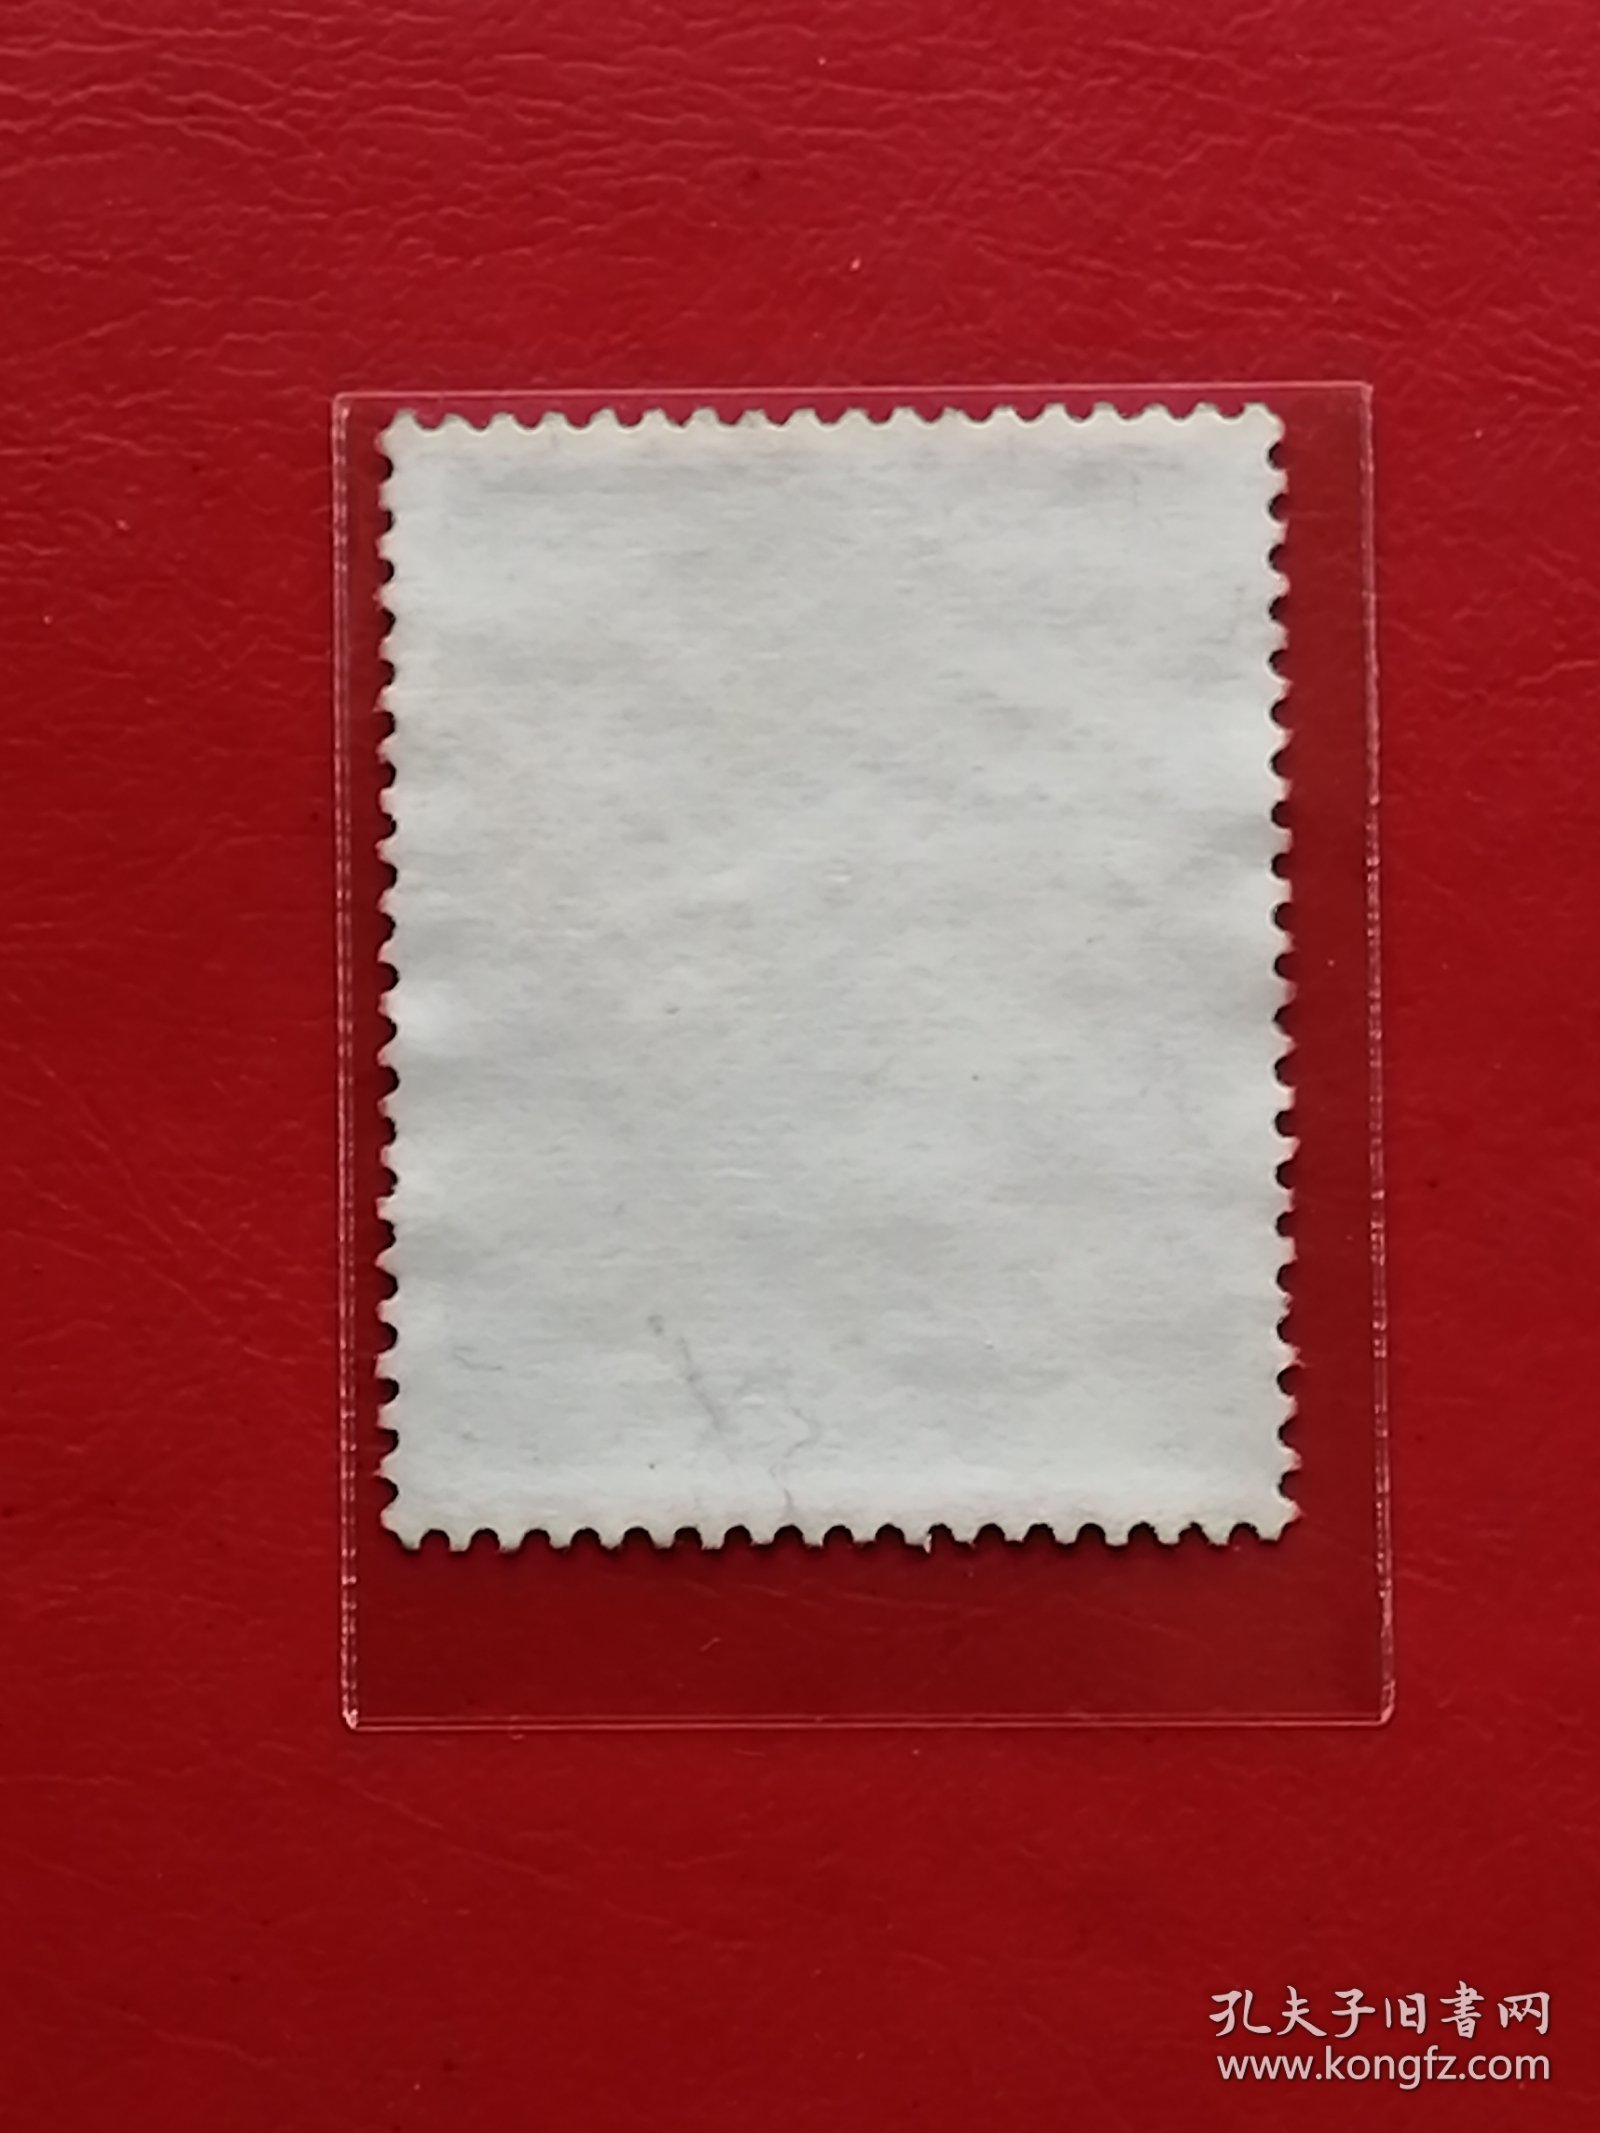 中国邮票 t105 1985年 发行量747万 残疾人附捐邮票 4-2 信销